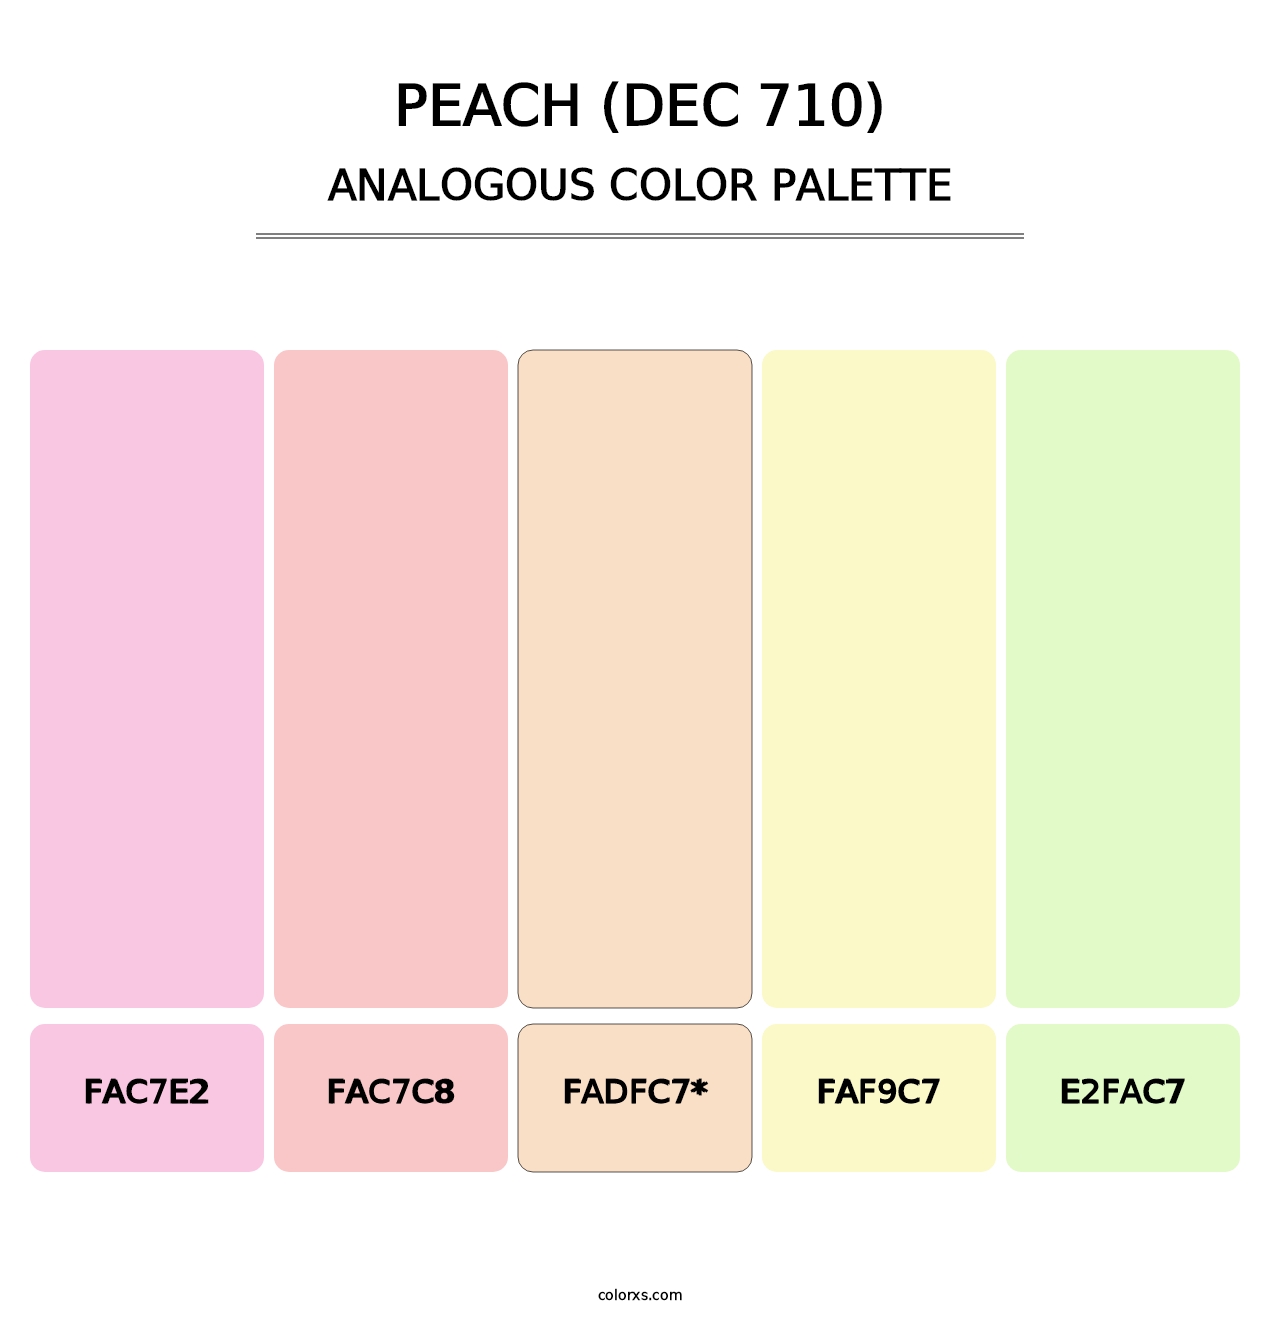 Peach (DEC 710) - Analogous Color Palette